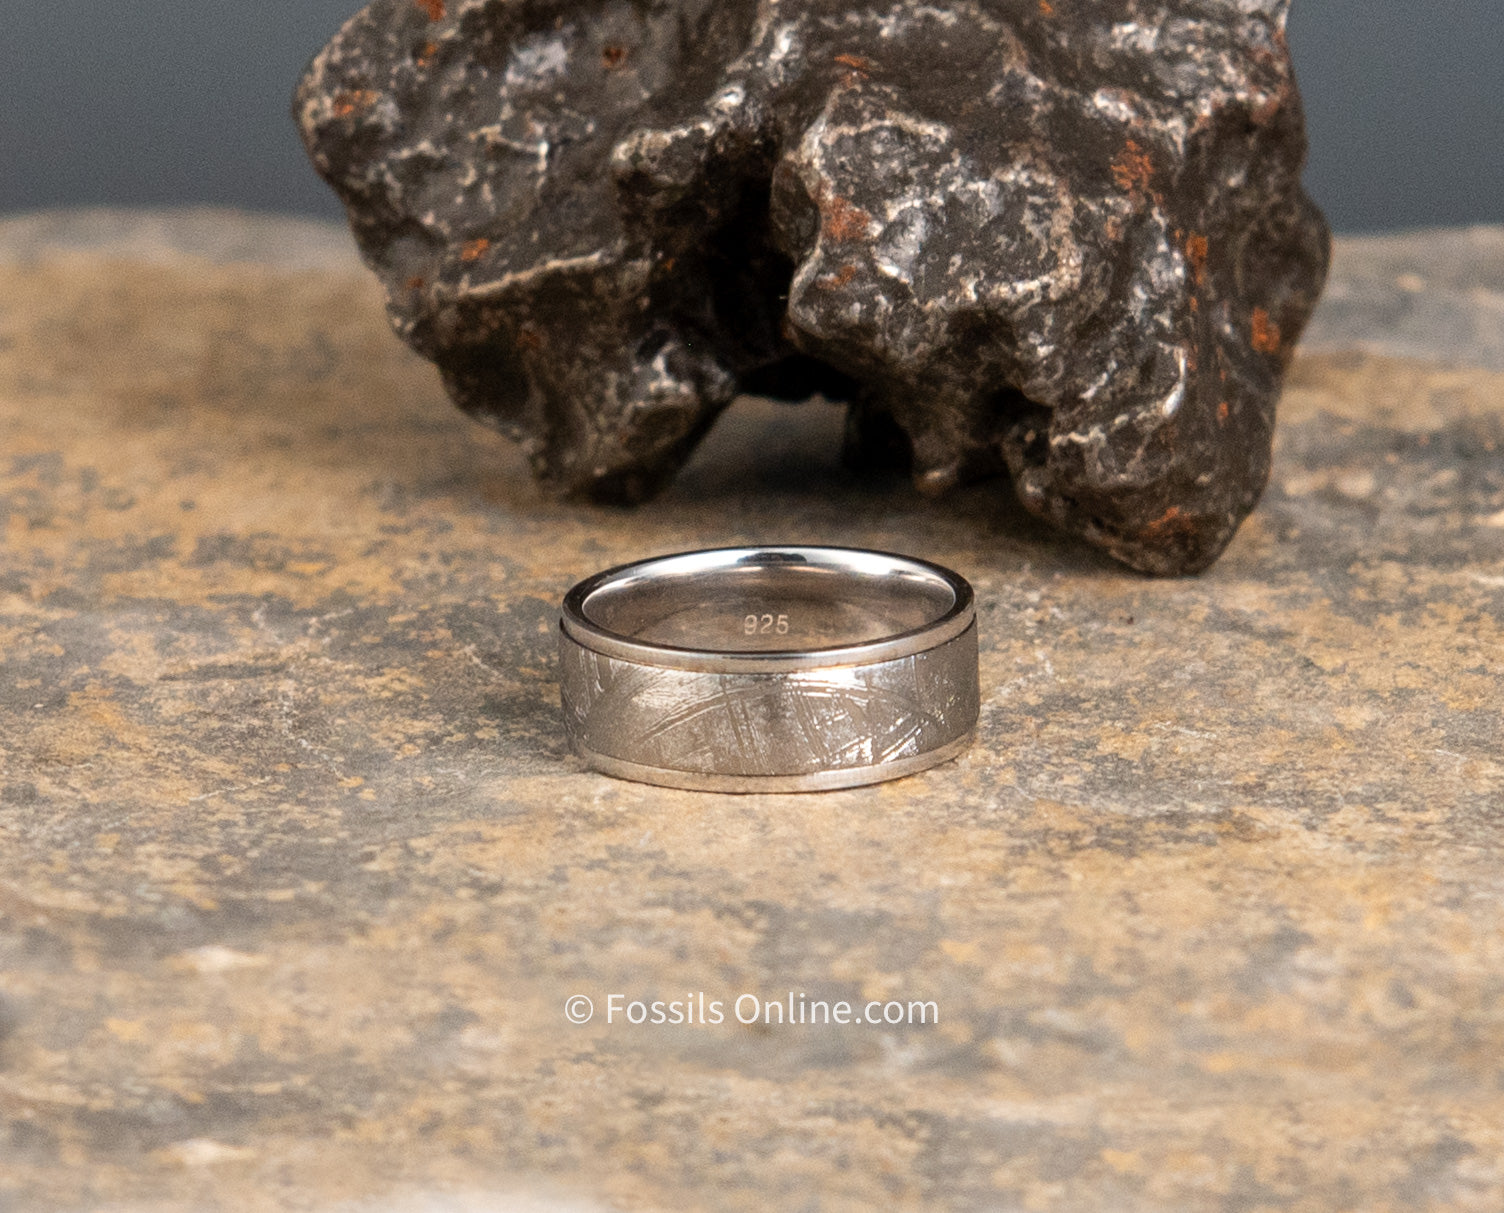 Muonionalusta Meteorite /Silver Wedding Band